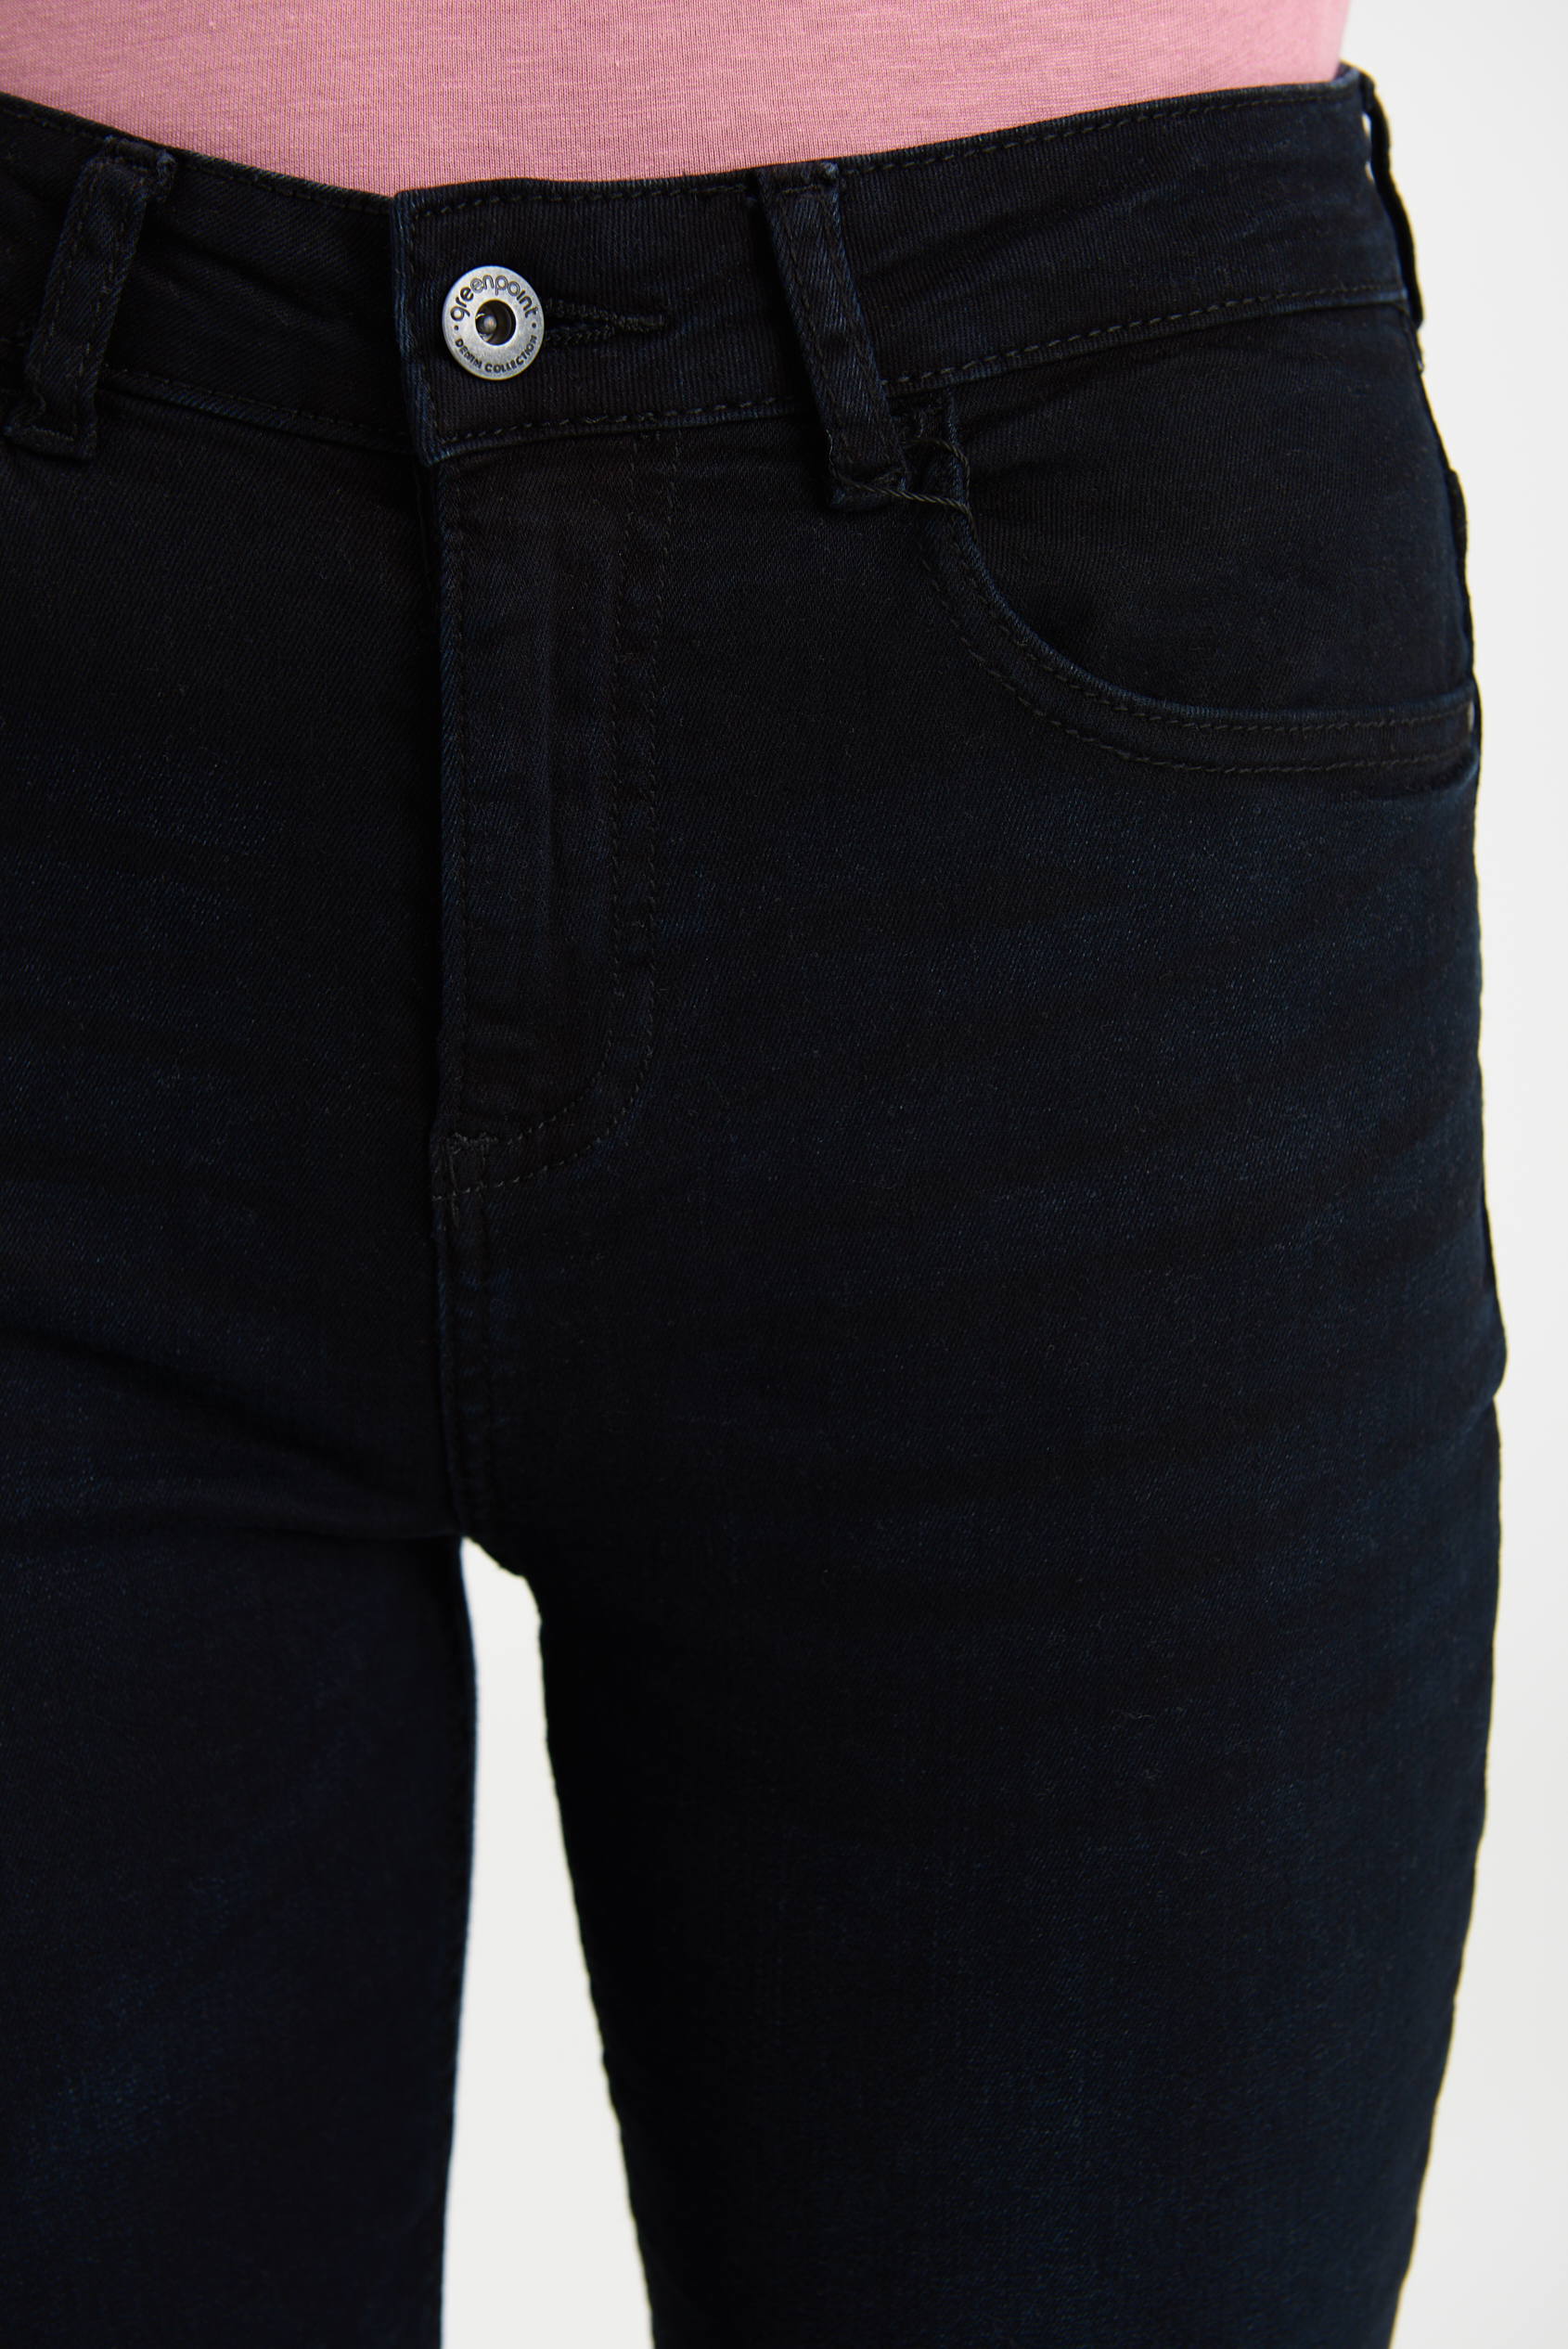 Ciemnogranatowe, jeansowe spodnie z długimi nogawkami